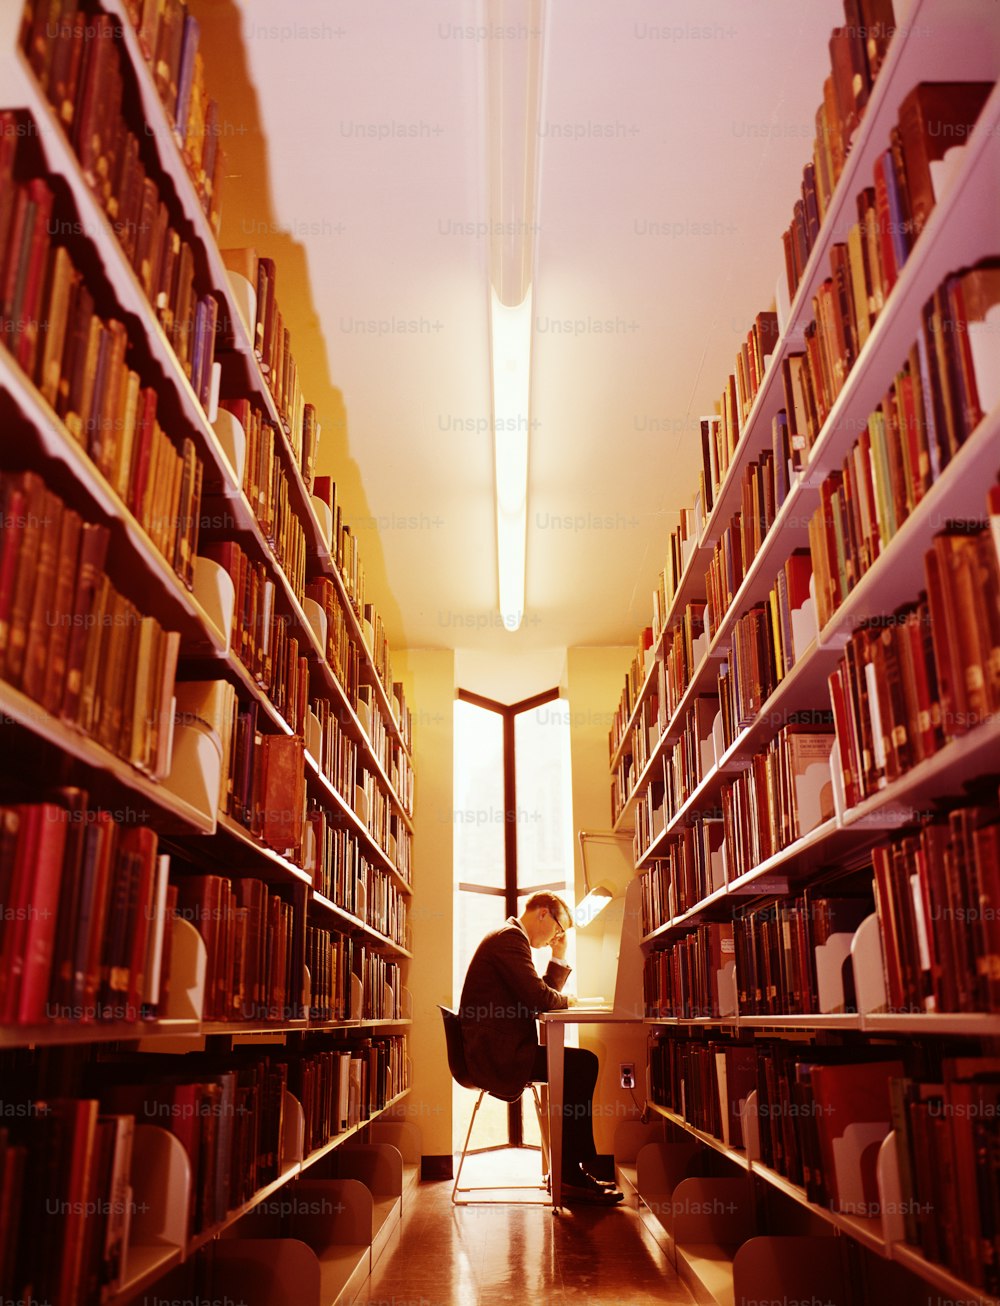 ESTADOS UNIDOS - CIRCA 1960s: Hombre en la biblioteca.